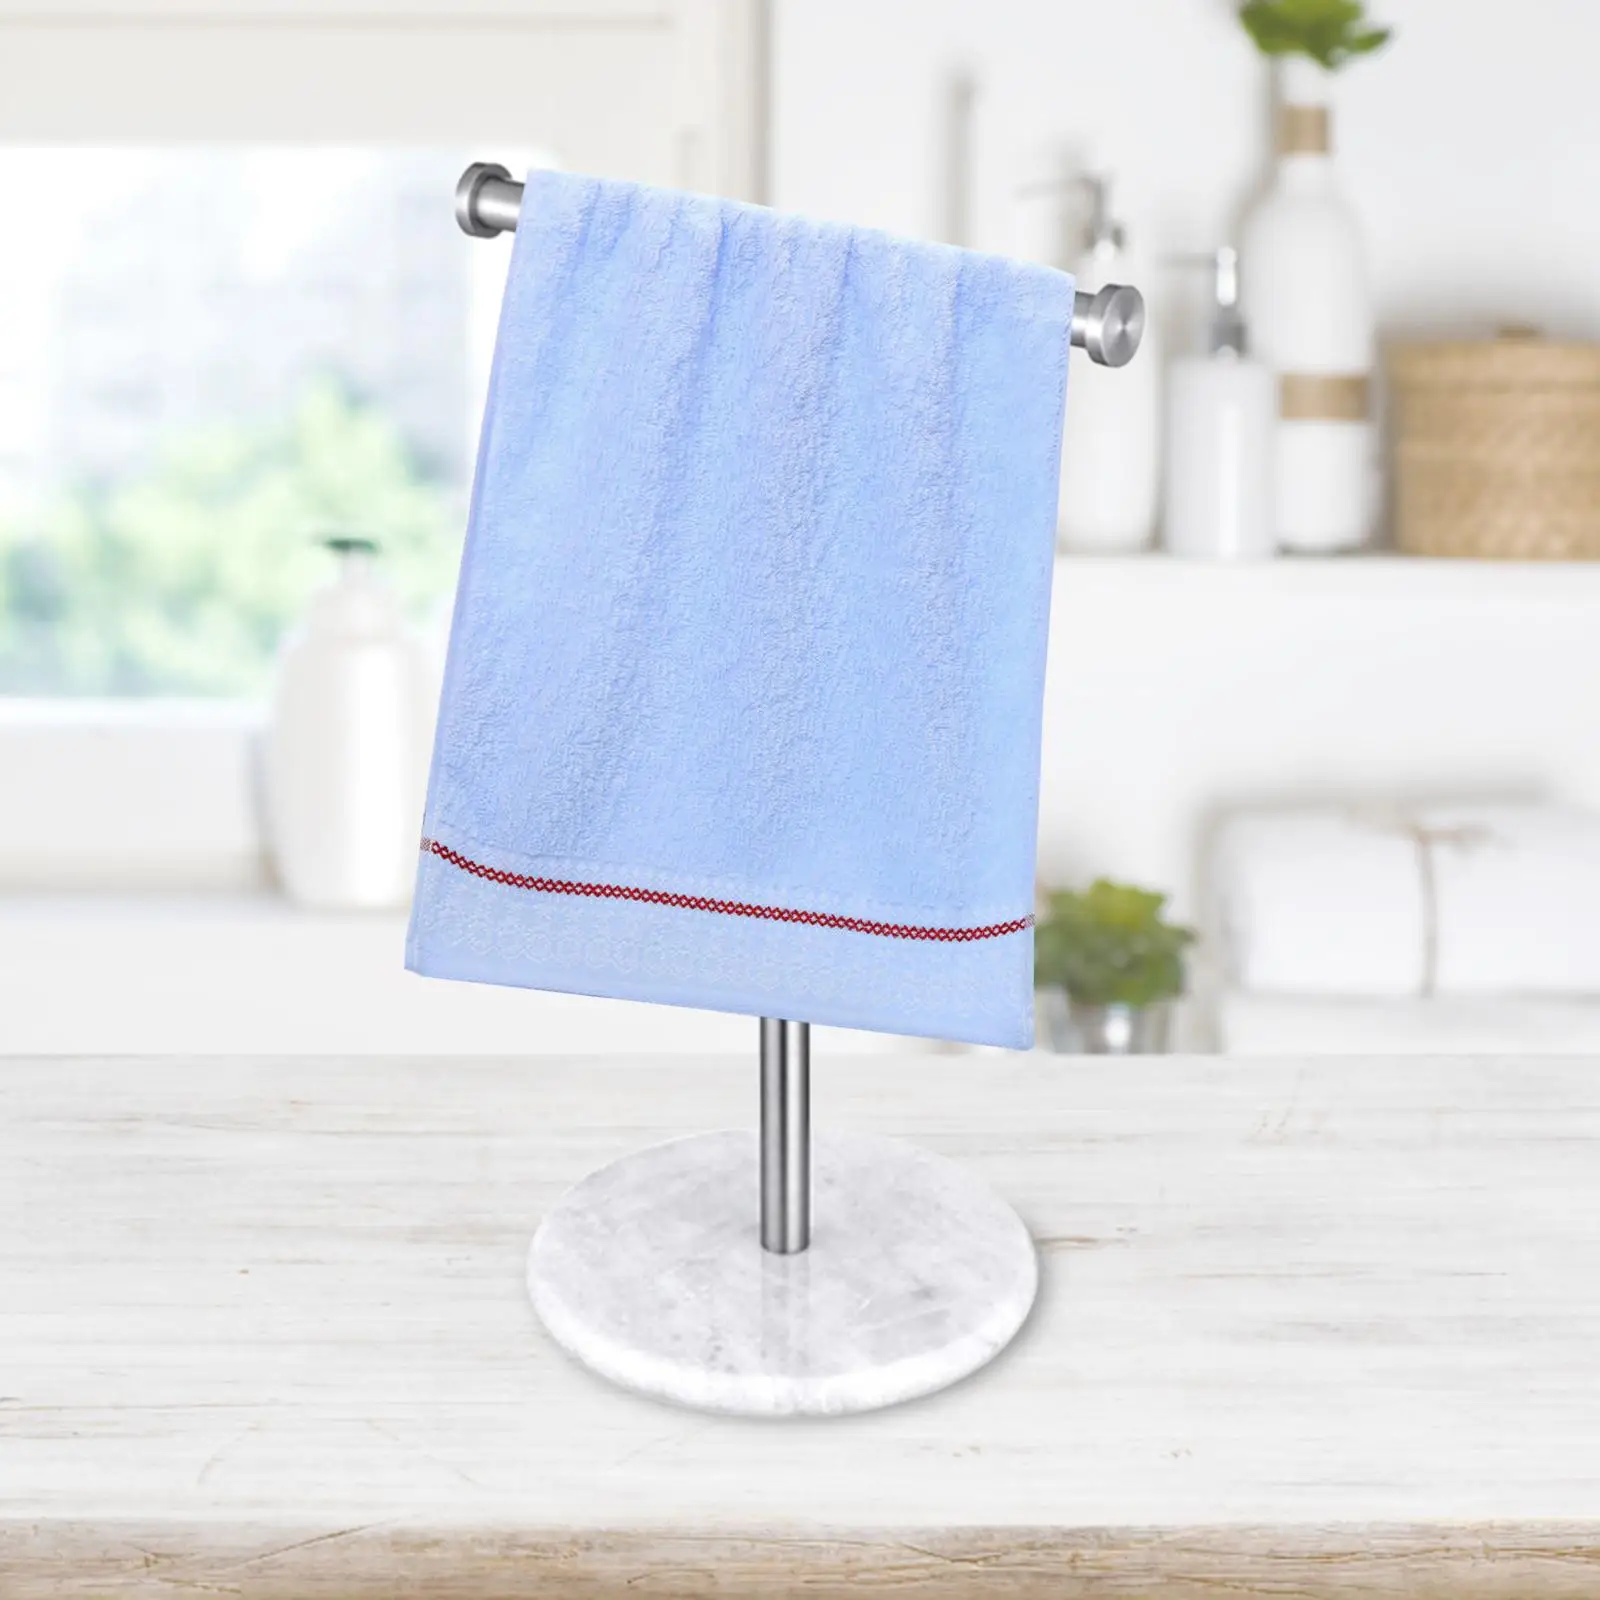 T Shape Bath Towel Stand Hand Towel Hanger Free Standing Towel Bar Rack Stand Towel Bar for Kitchen Countertop Vanity Bathroom